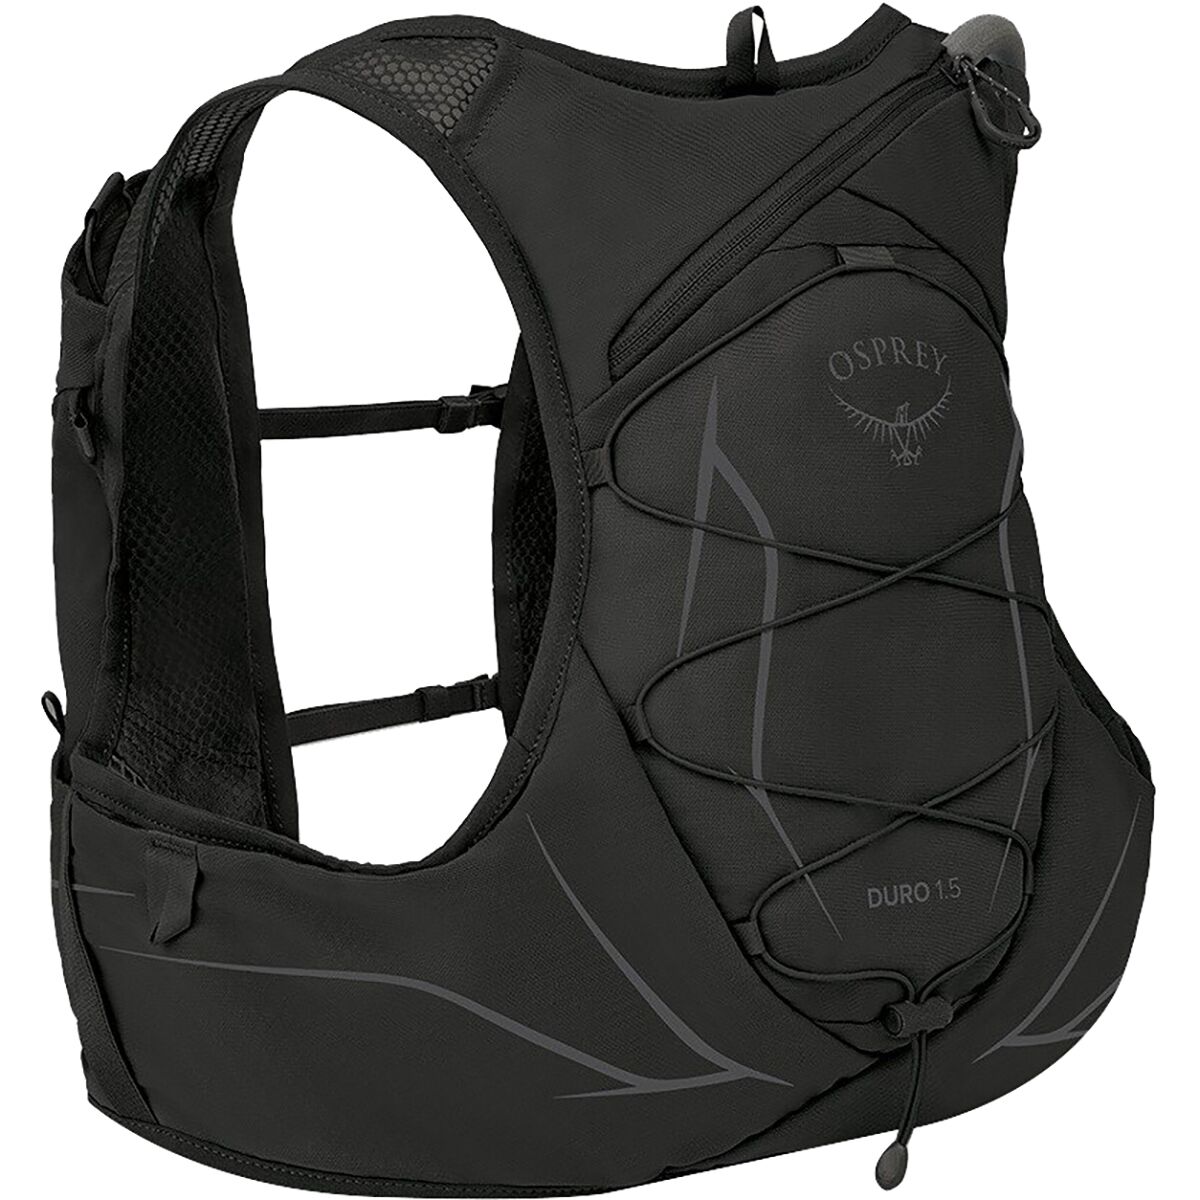 Osprey Packs Duro 1.5L Backpack